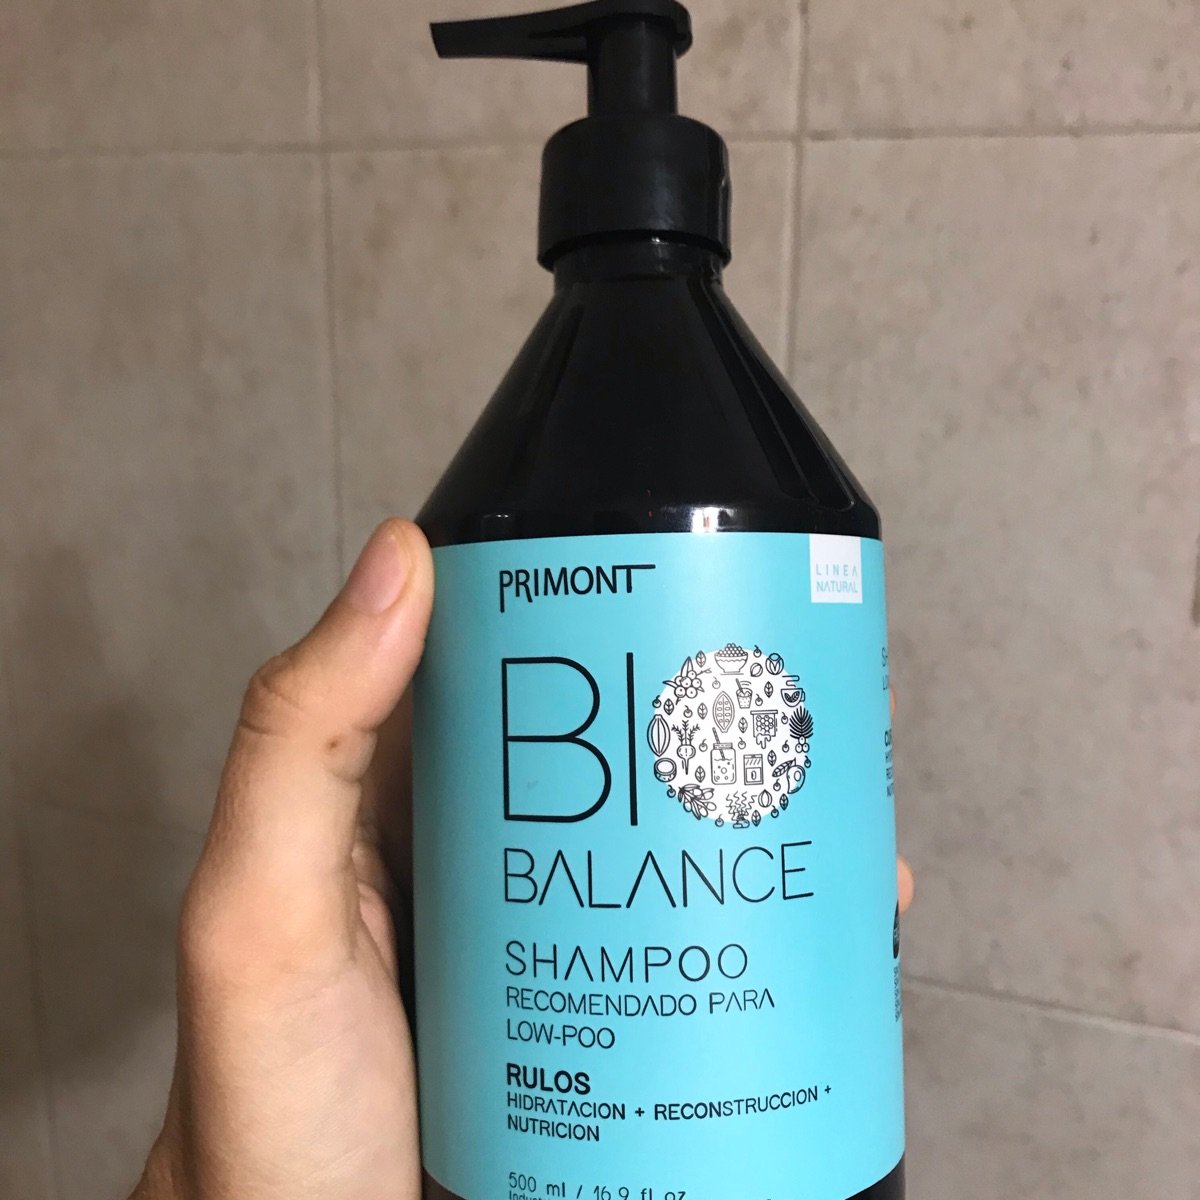 Avis sur Bio Balance shampoo rulos low-poo par Primont | abillion